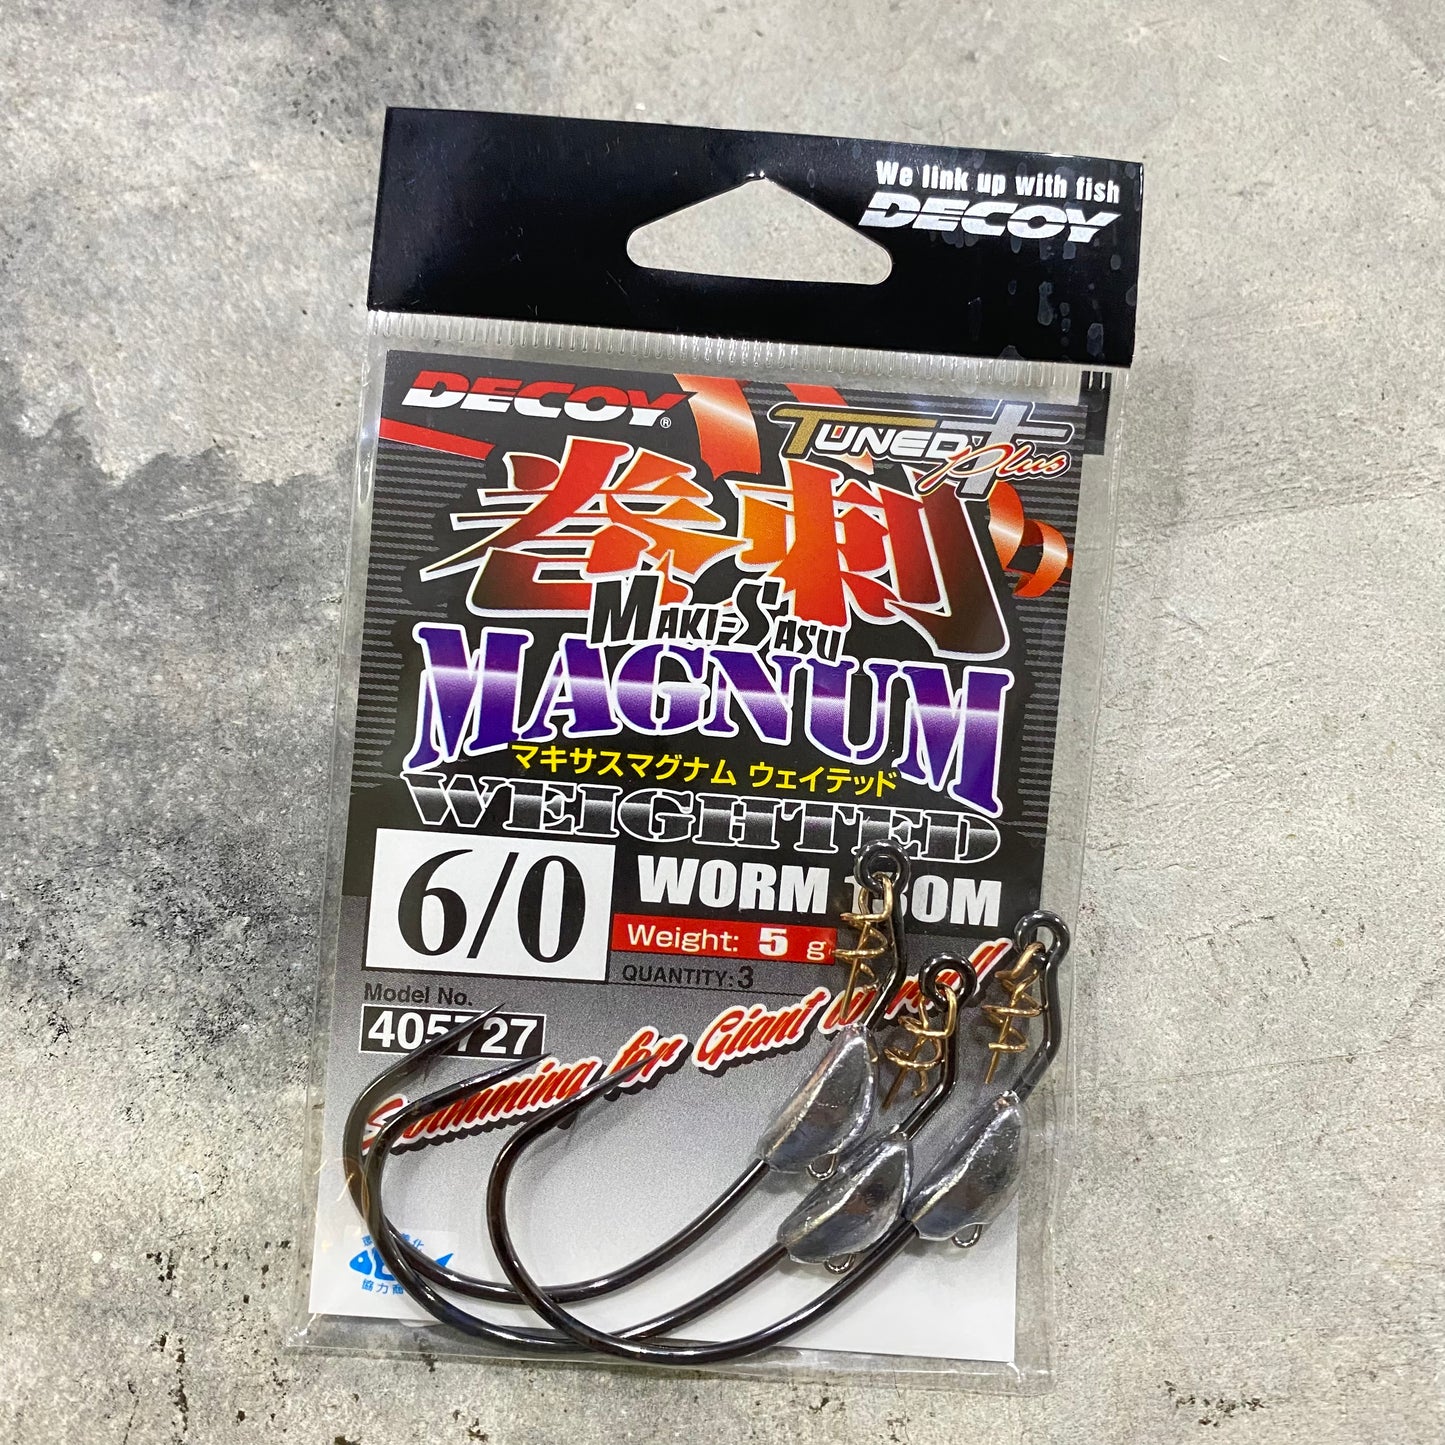 Worm130M Makisasu Magnum Weighted